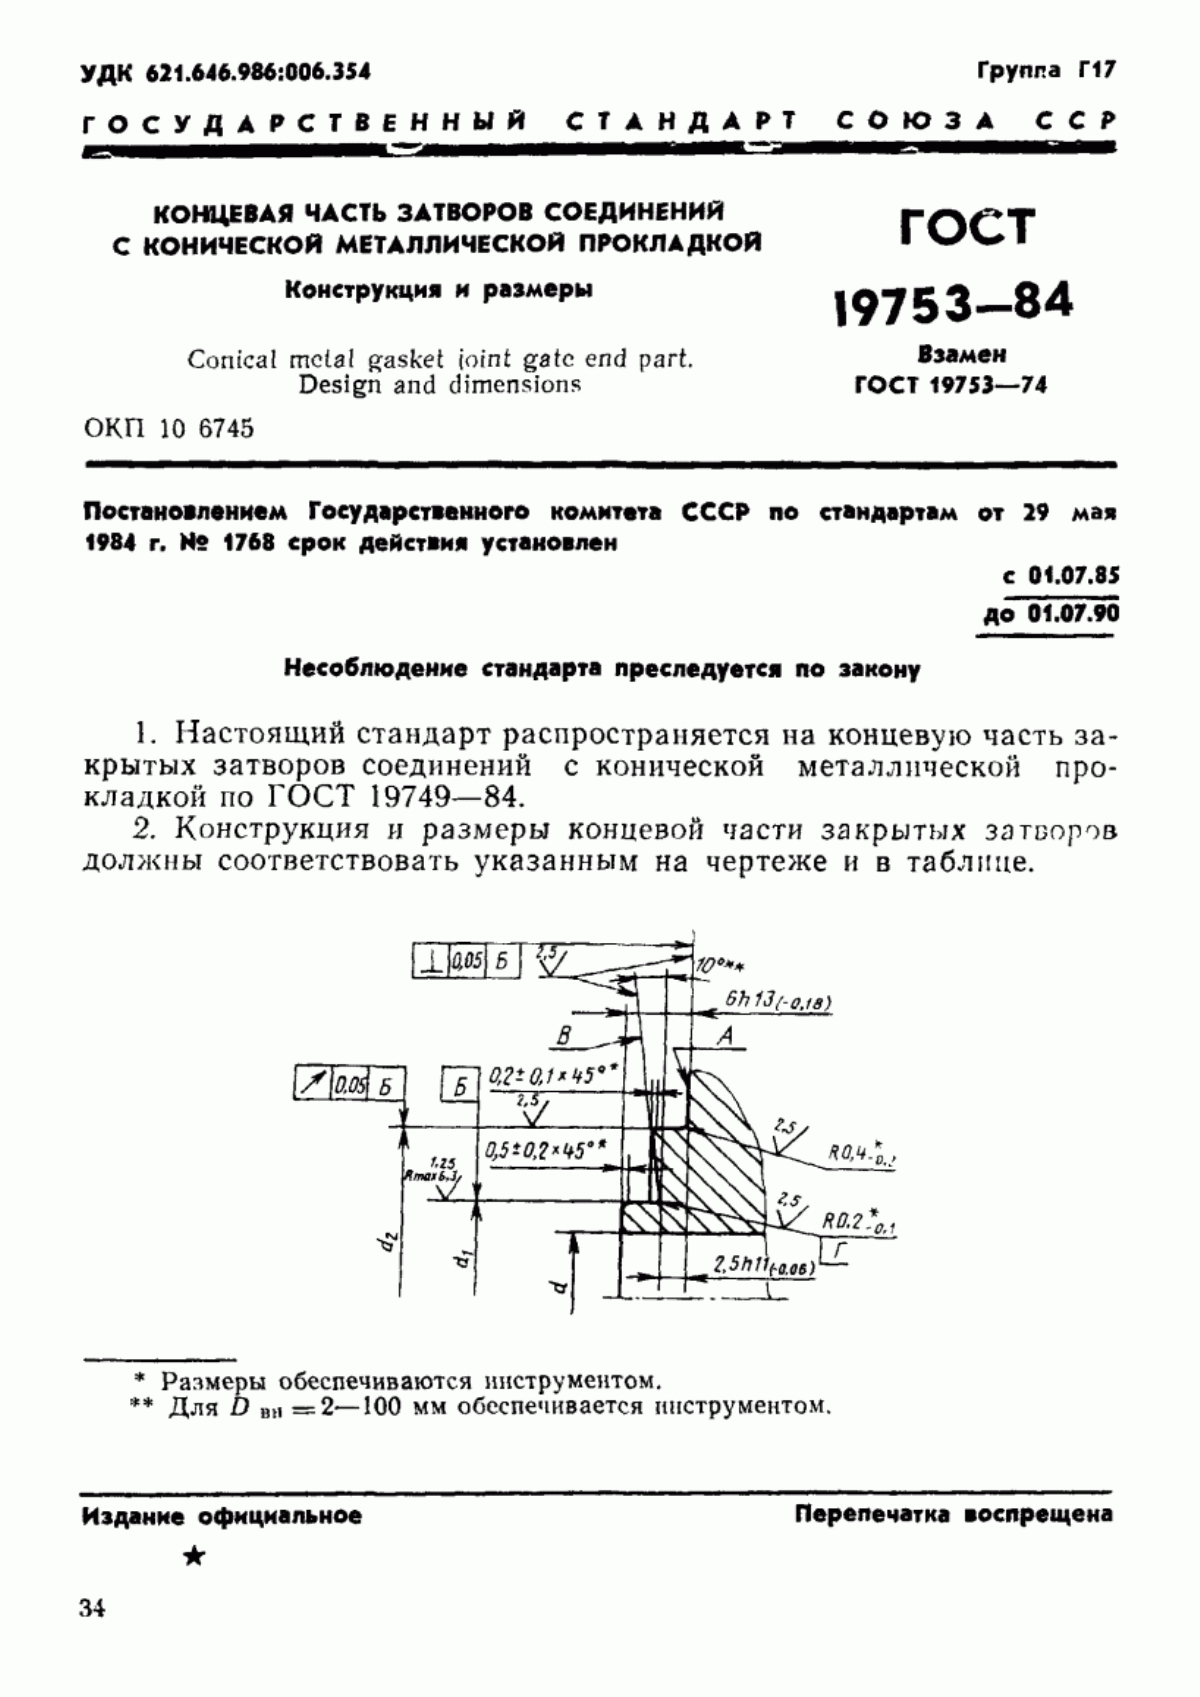 ГОСТ 19753-84 Концевая часть затворов соединений с конической металлической прокладкой. Конструкция и размеры